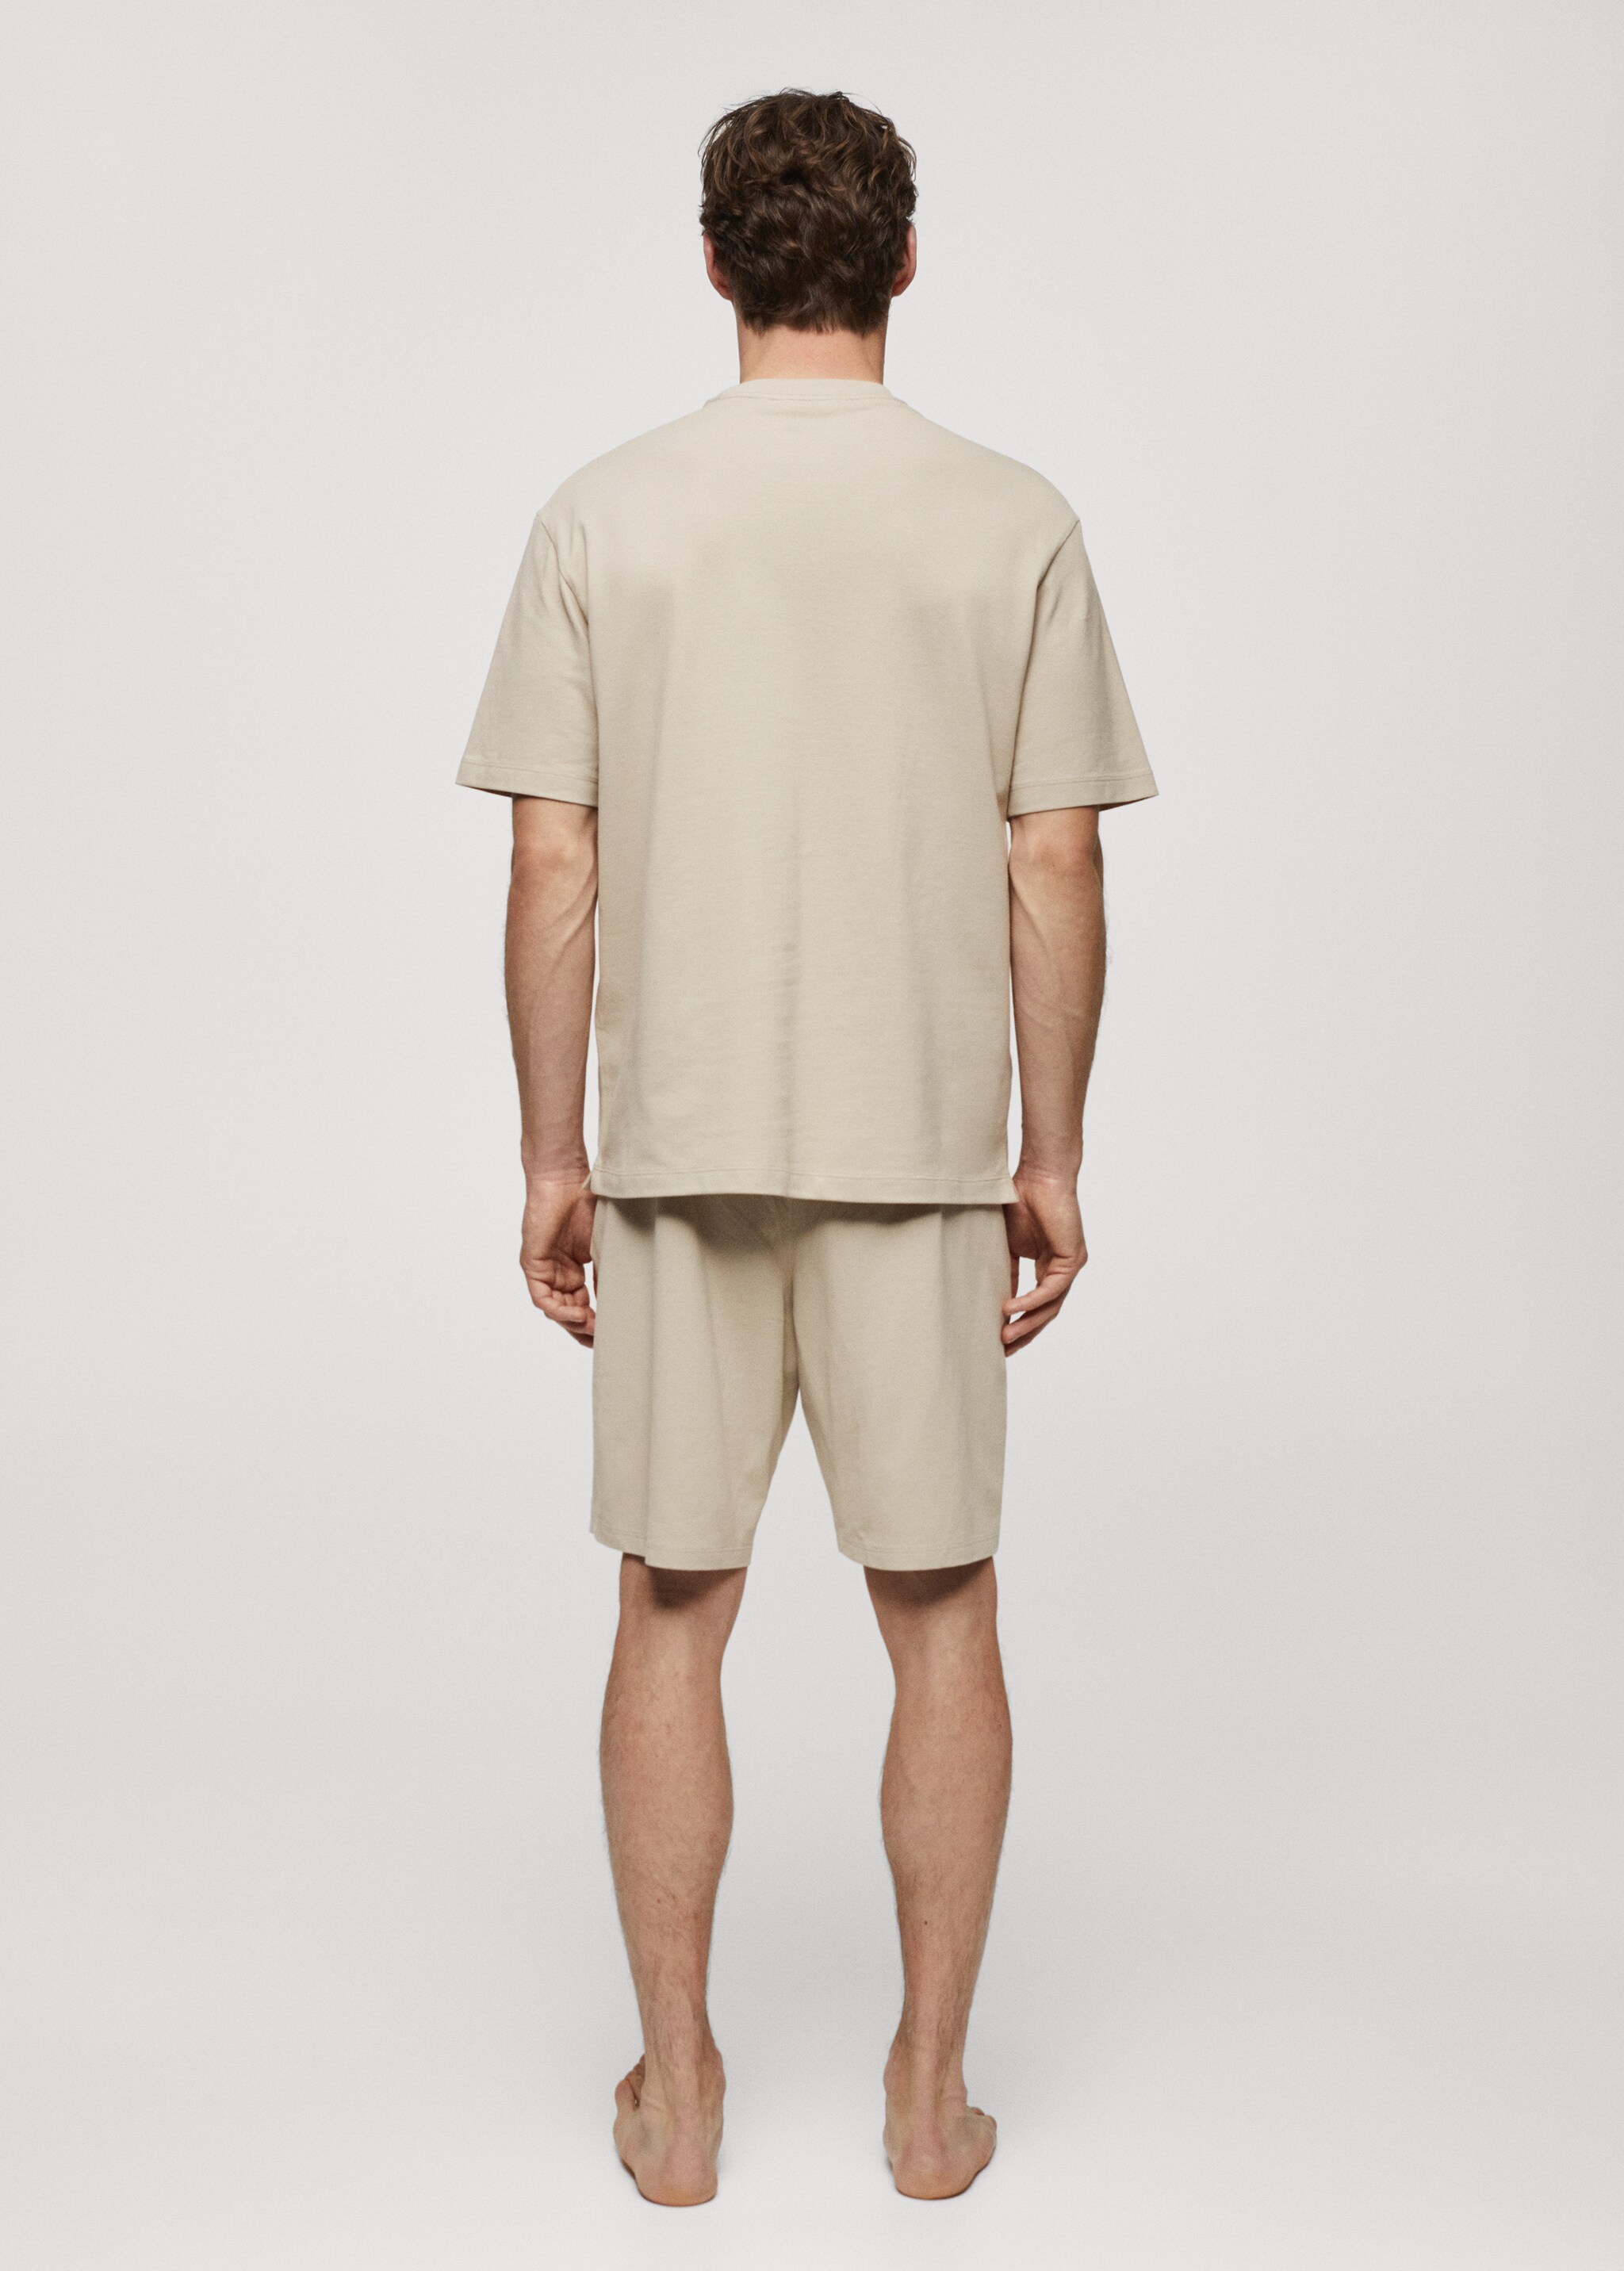 Комплект короткая пижама из хлопка - Обратная сторона изделия